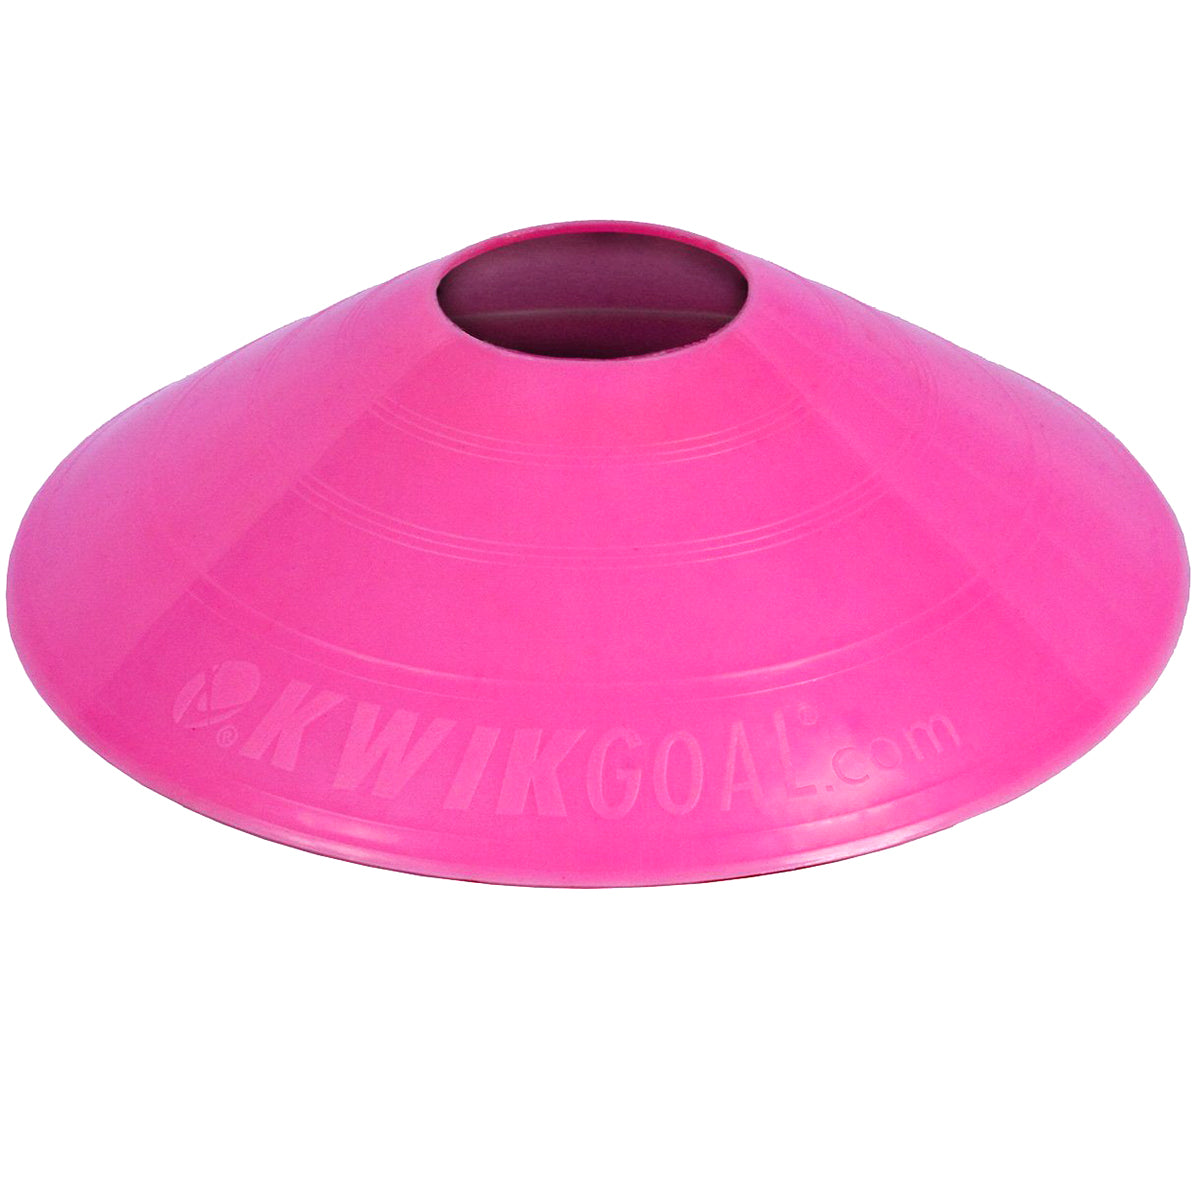 Kwikgoal Small Disc Cones Soccer Coaching Equipment | 6A10 Field equipment Kwikgoal Pink 